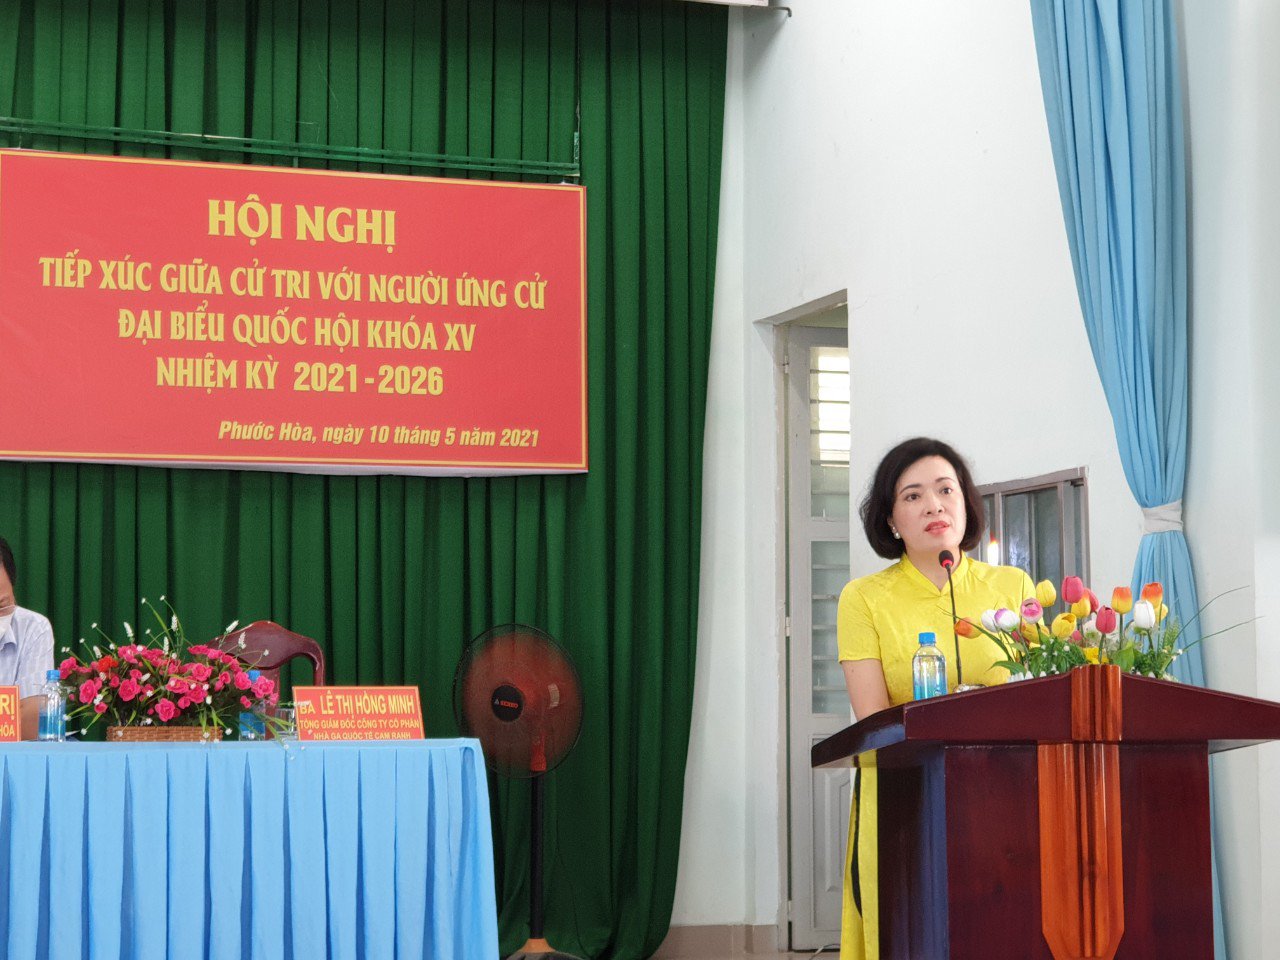 Nỗ lực phục hồi và thúc đẩy phát triển kinh tế du lịch Khánh Hòa